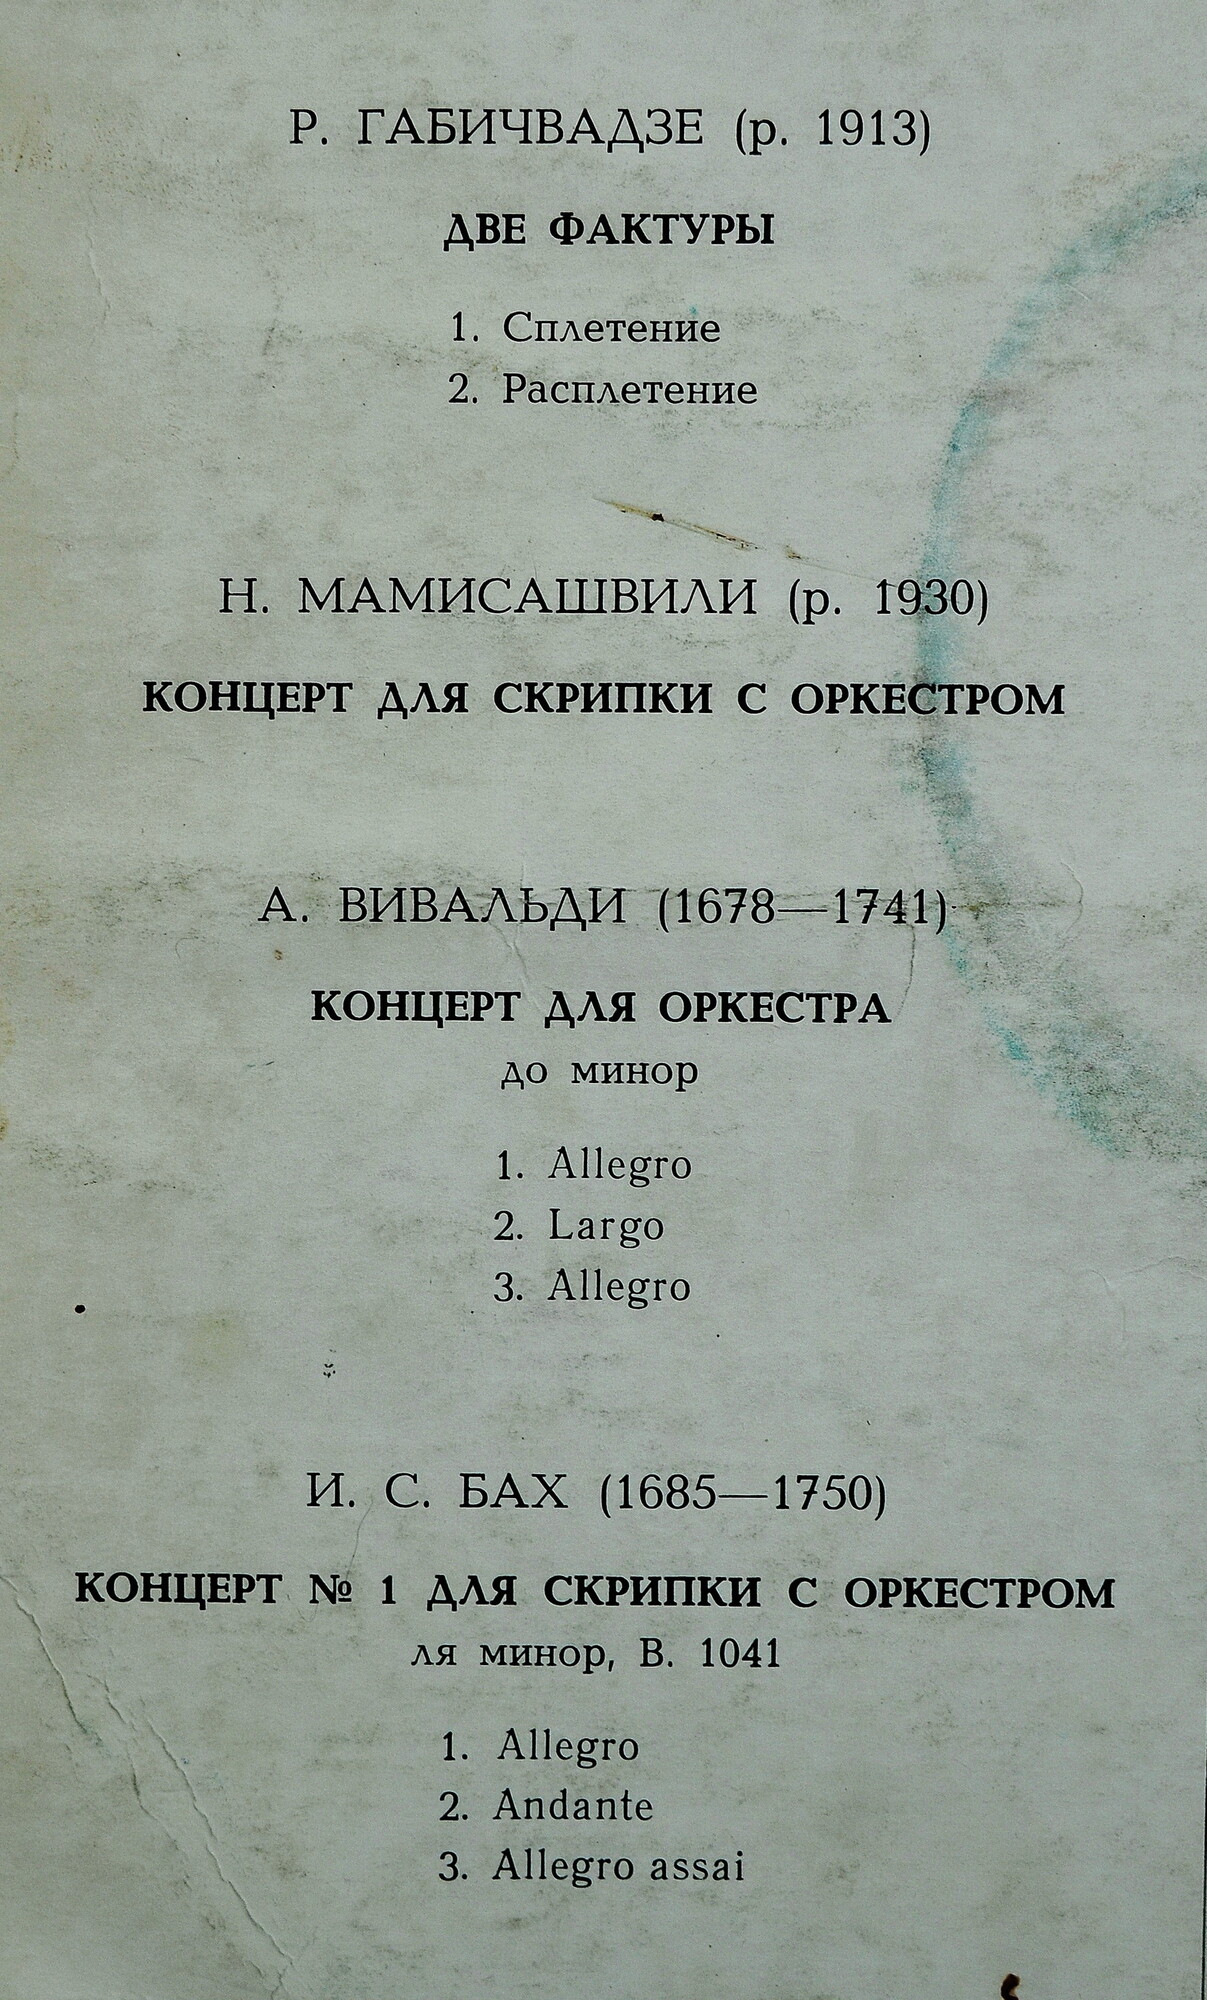 Камерный оркестр Грузинской государственной филармонии